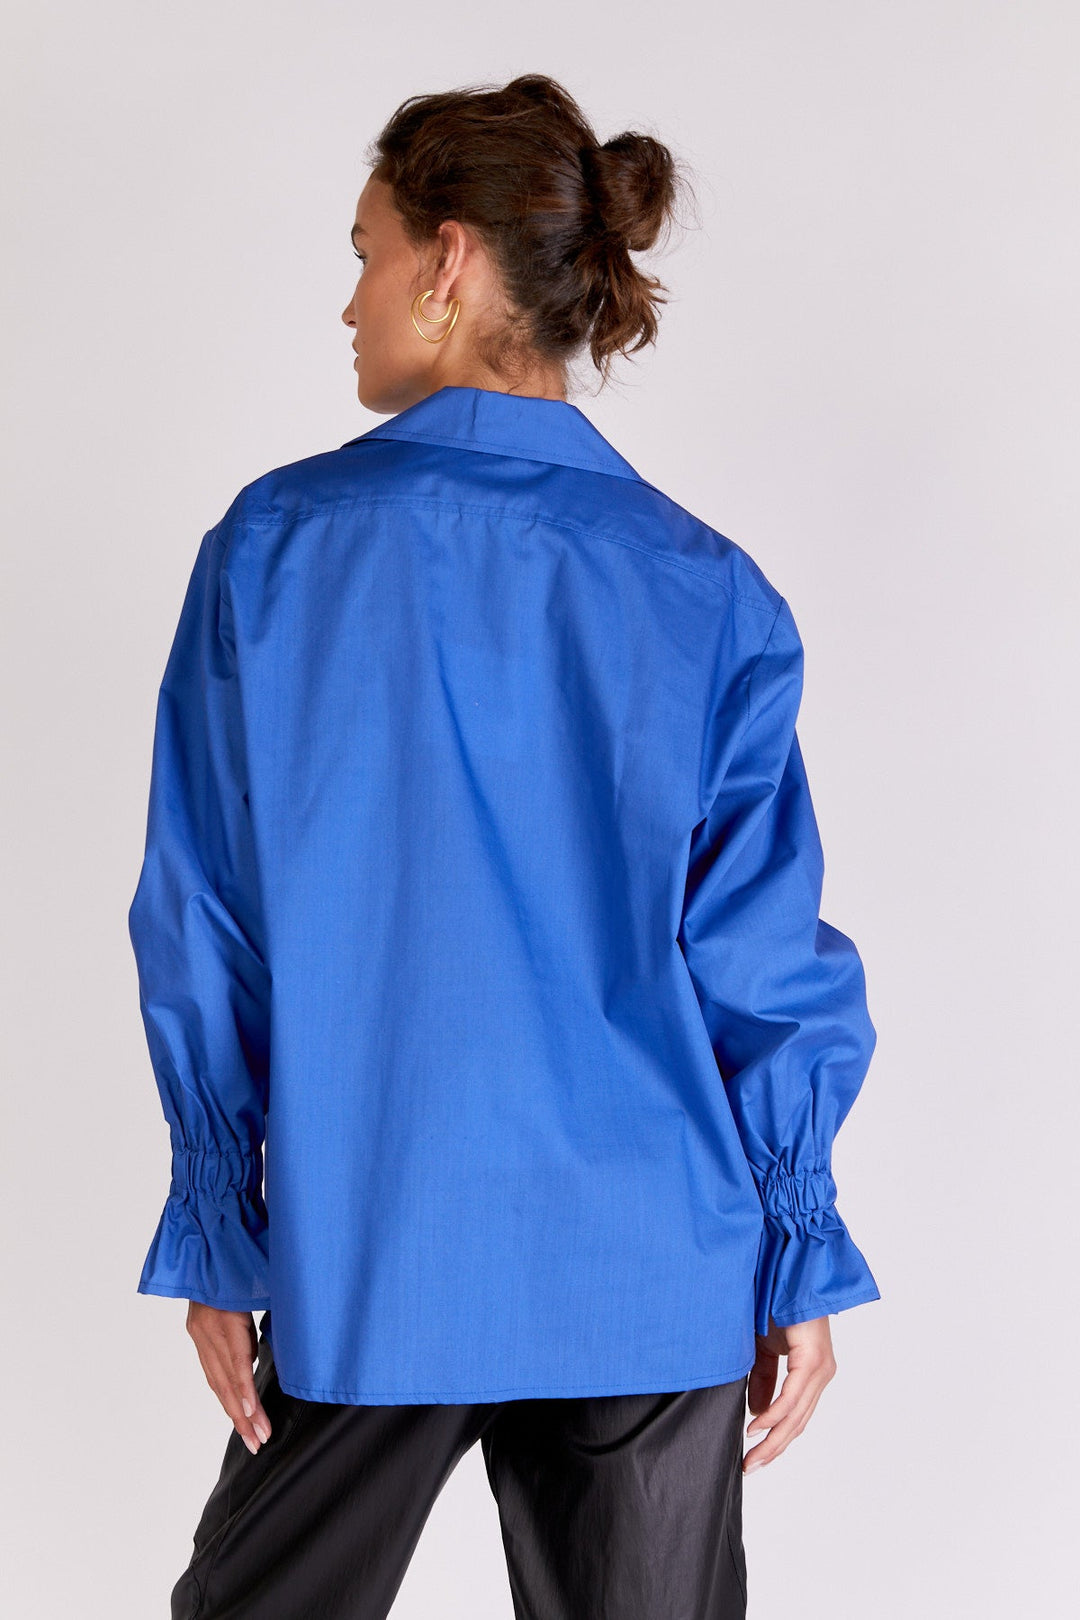 חולצת ביאטה בצבע כחול - Razili Studio